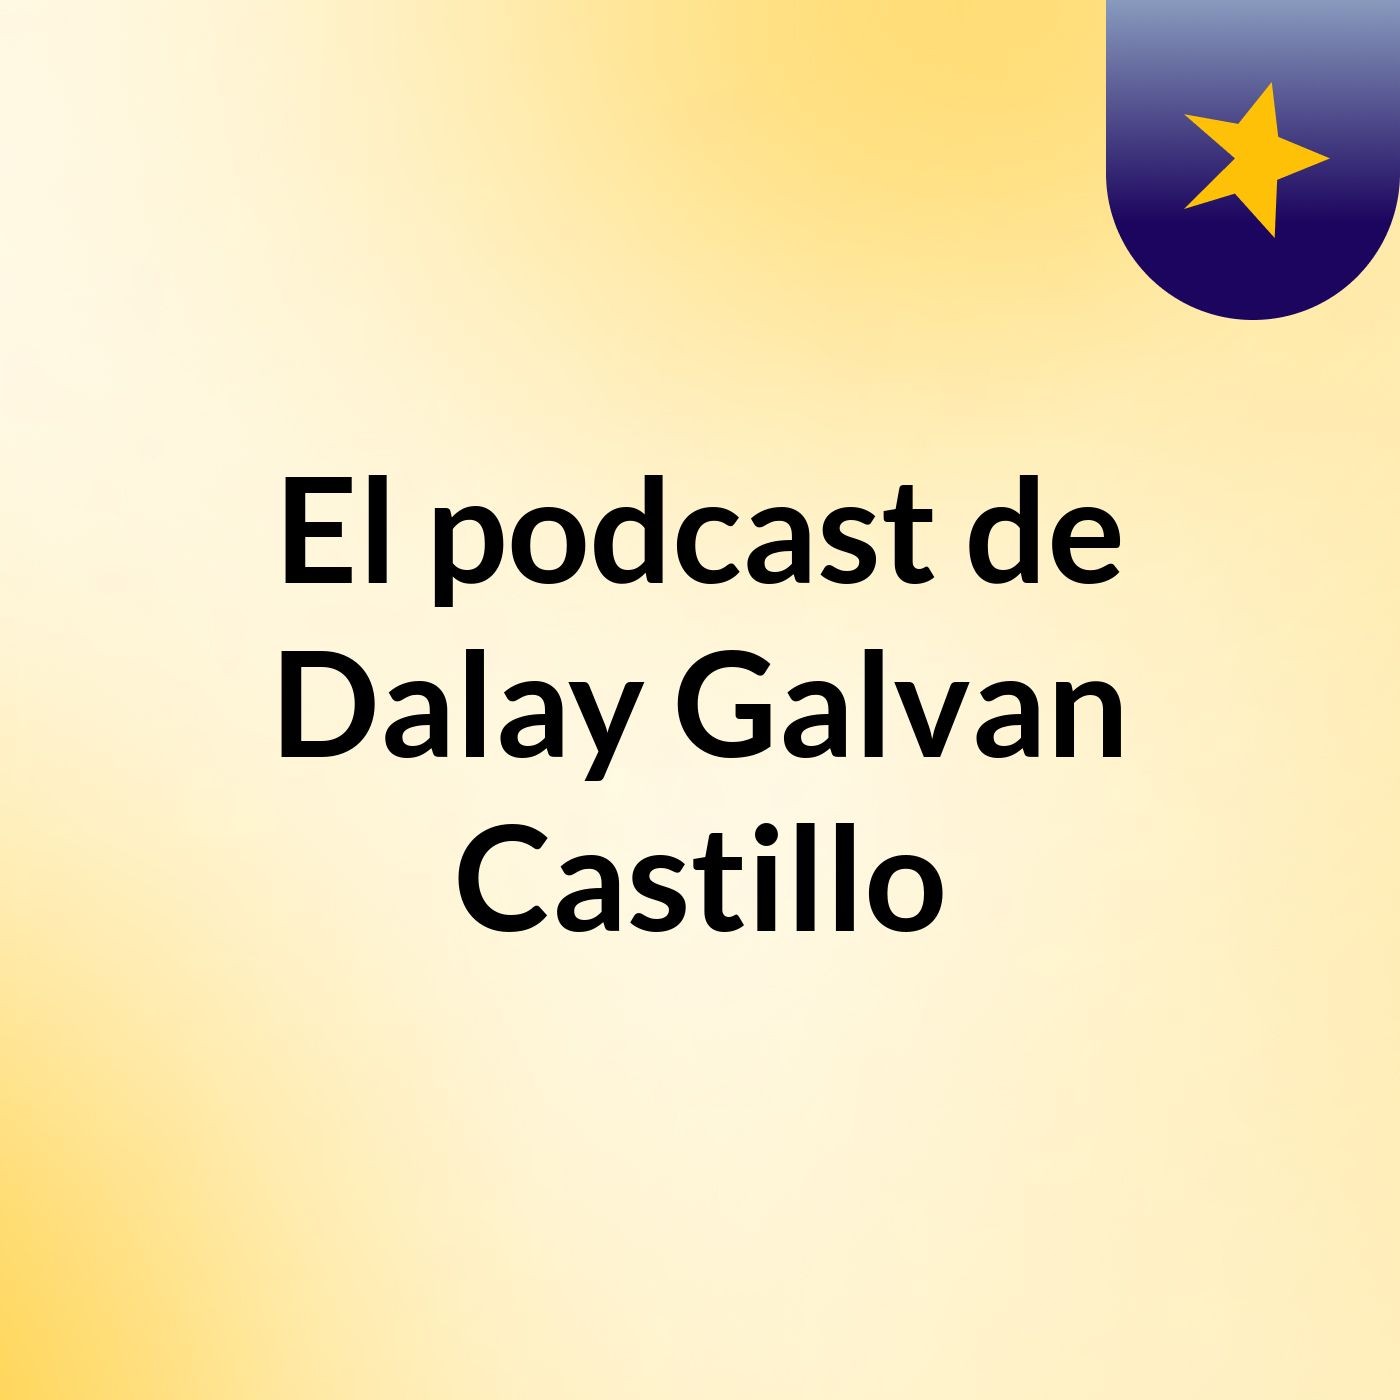 Episodio 1 - El podcast de Dalay Galvan Castillo